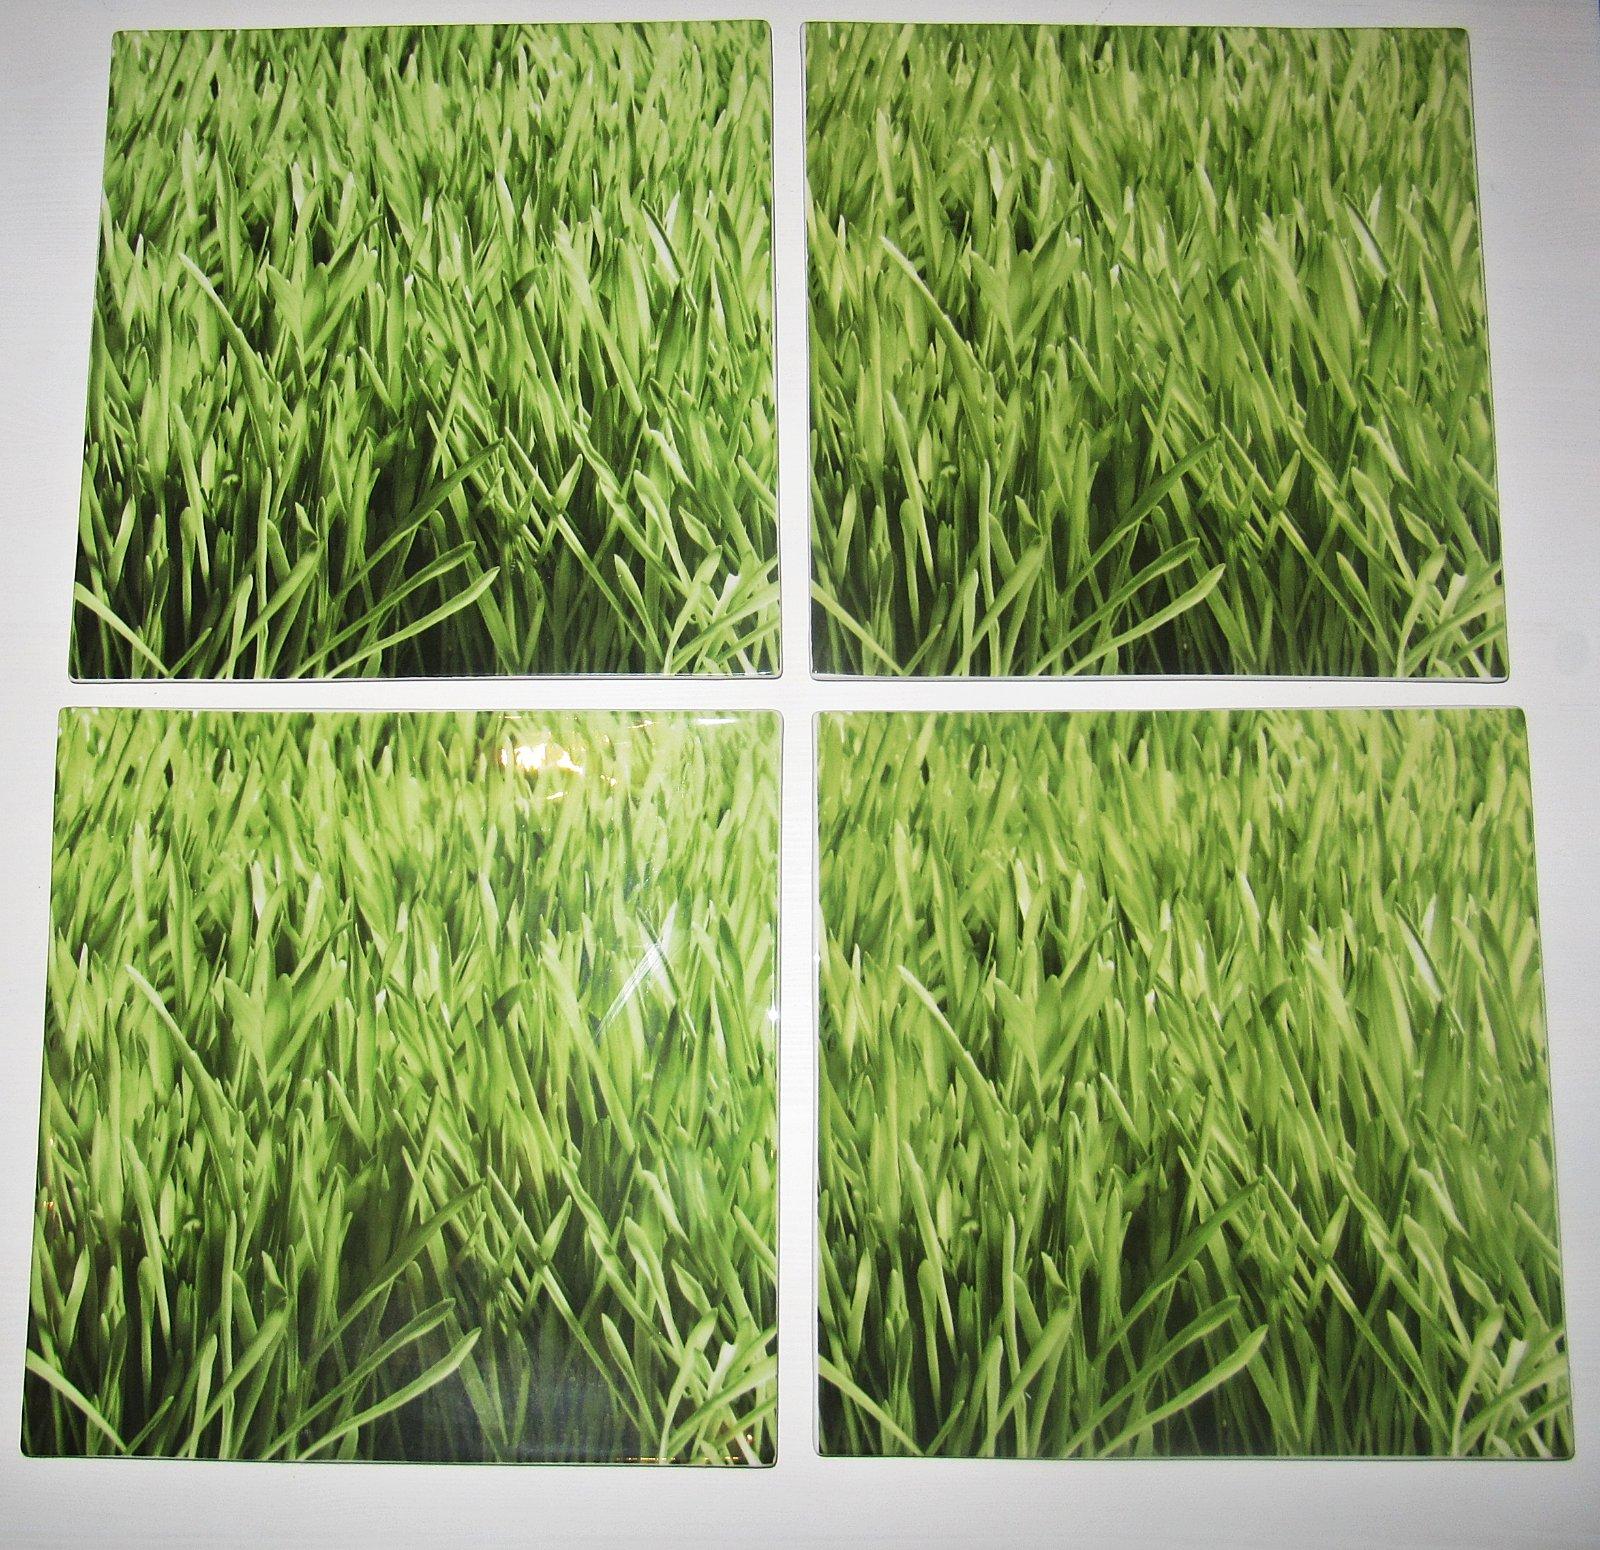 Taniere zelené - 4 kusy, porcelán, značka ASA Selection, 29 cm x 29 cm - Obrázok č. 1